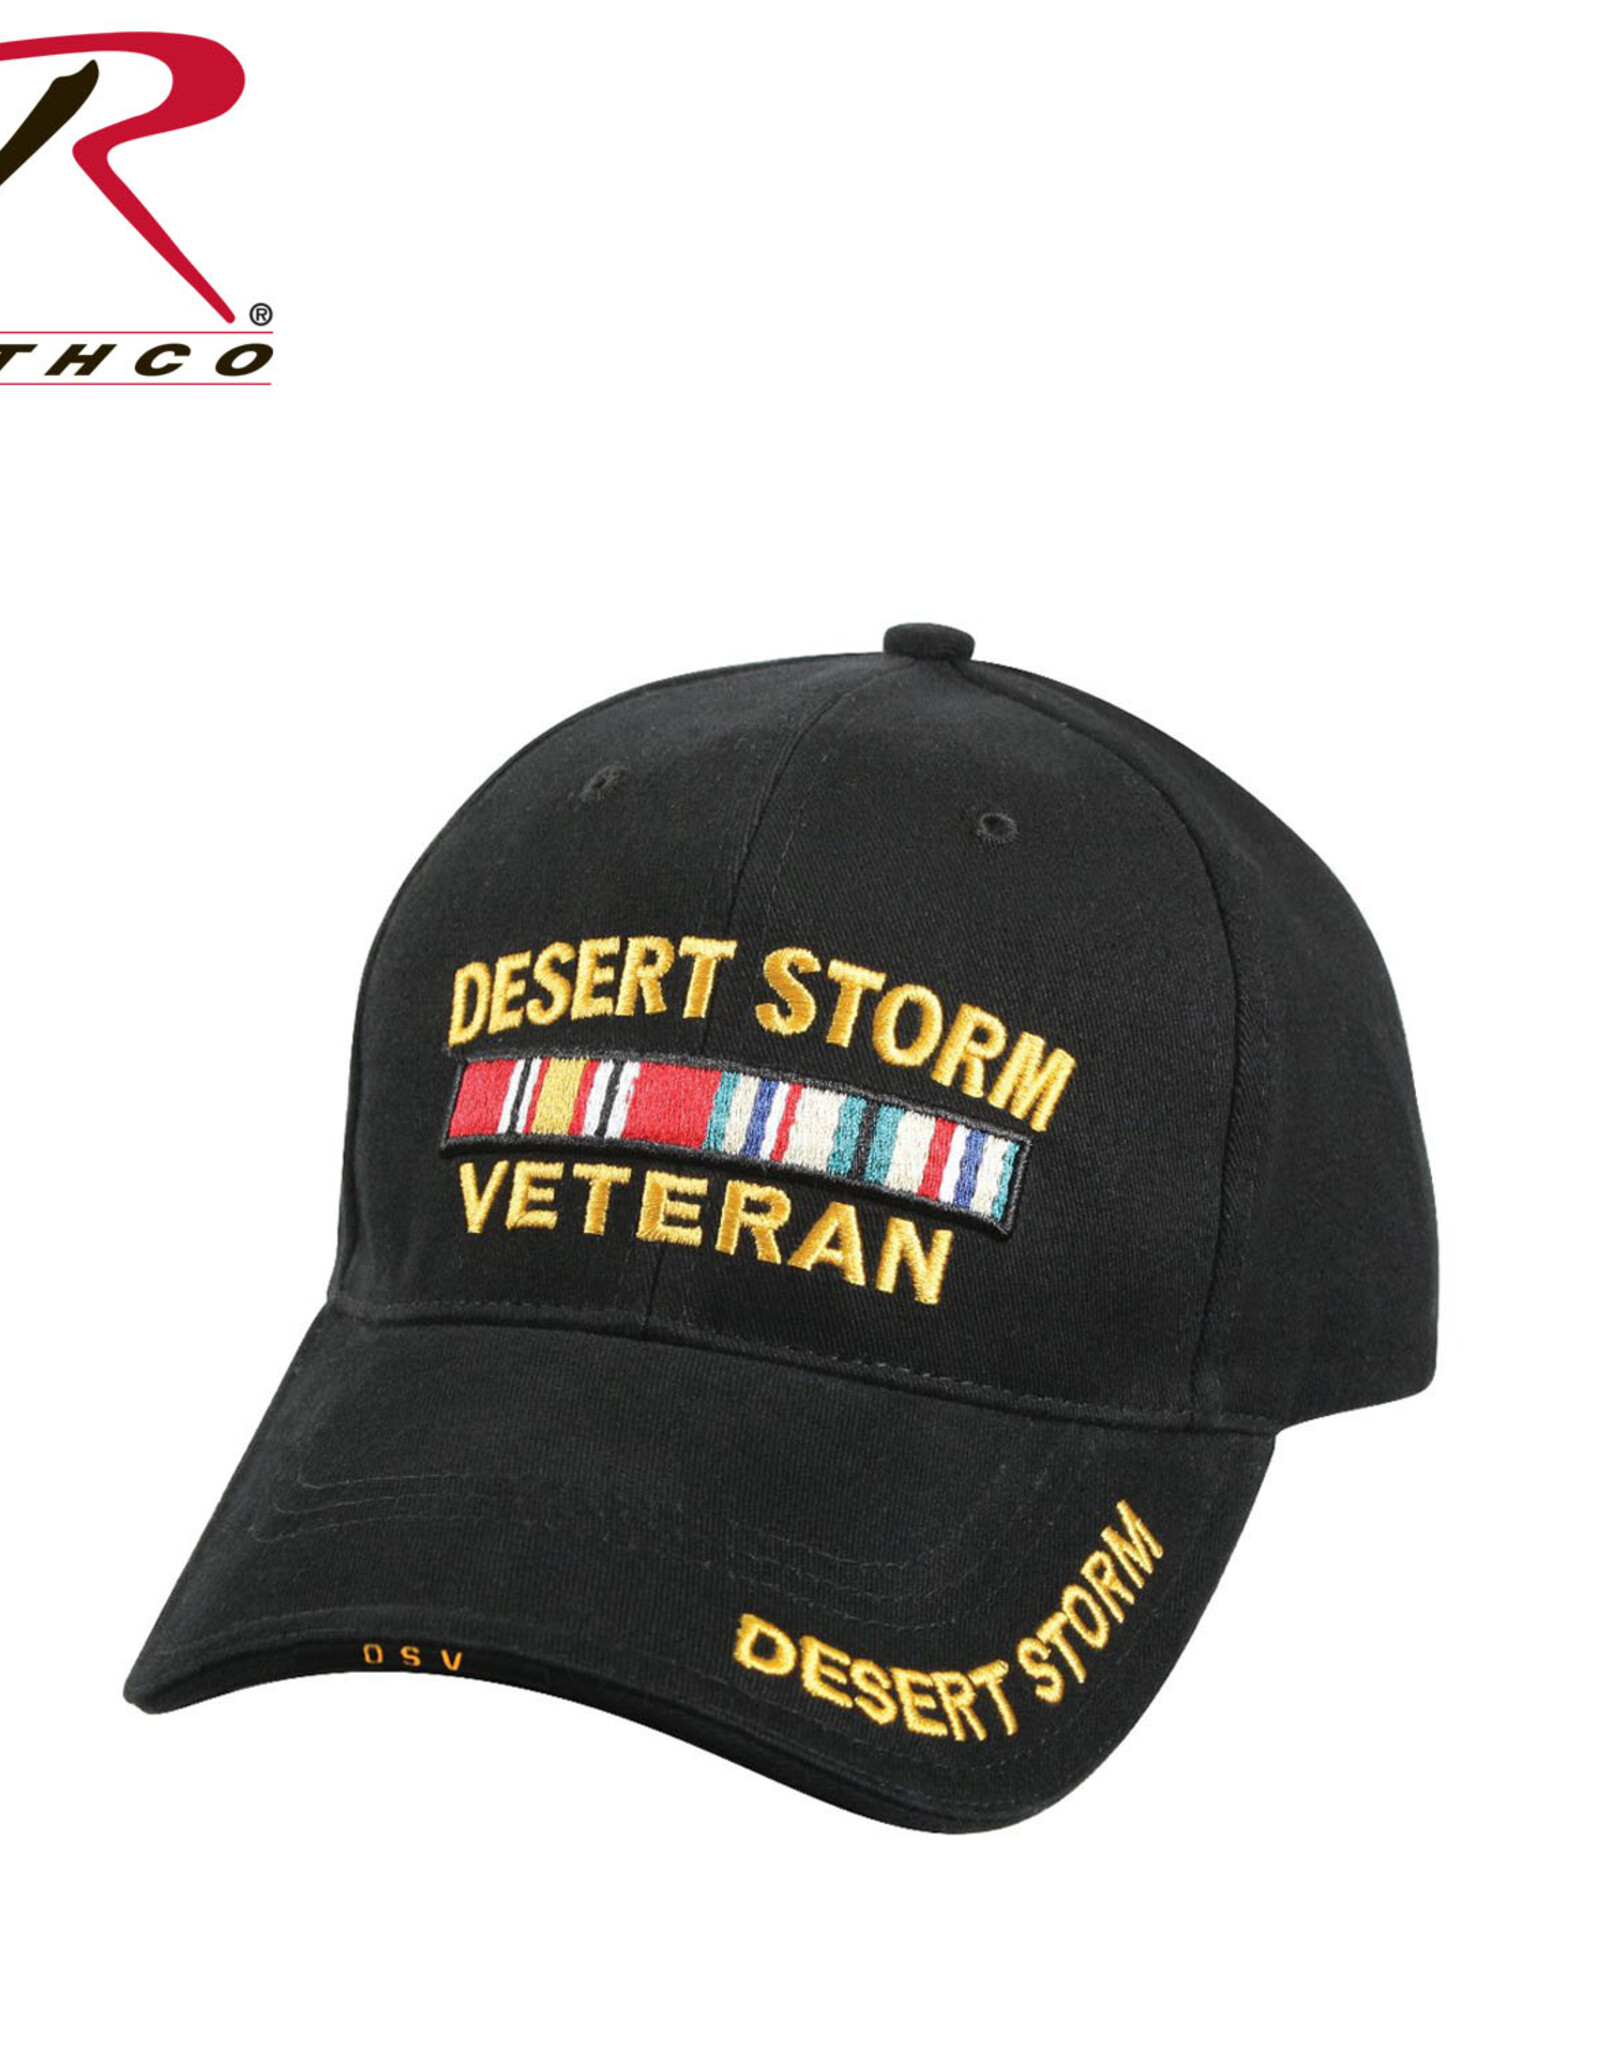 Rothco Desert Storm Veteran Hat